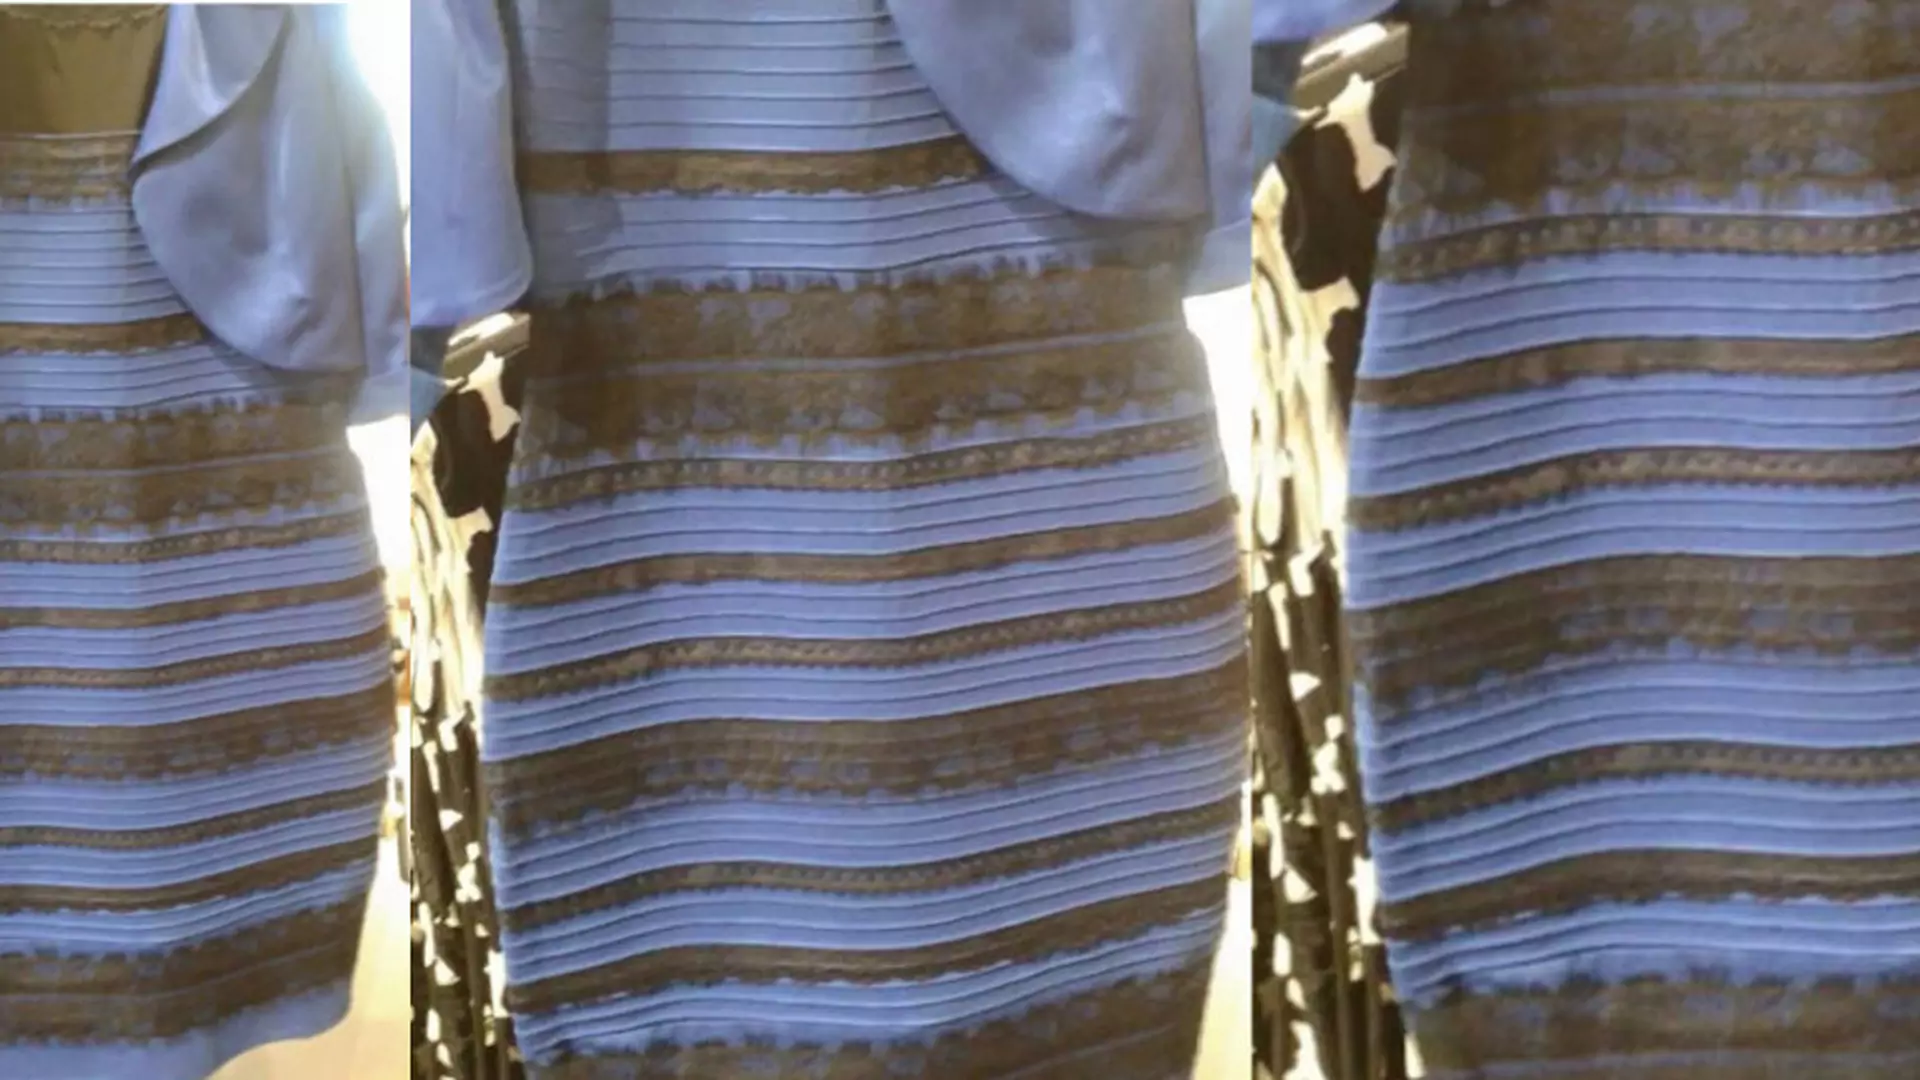 Jest biało-złota czy czarno-granatowa? Oto sukienka, która podzieliła świat!